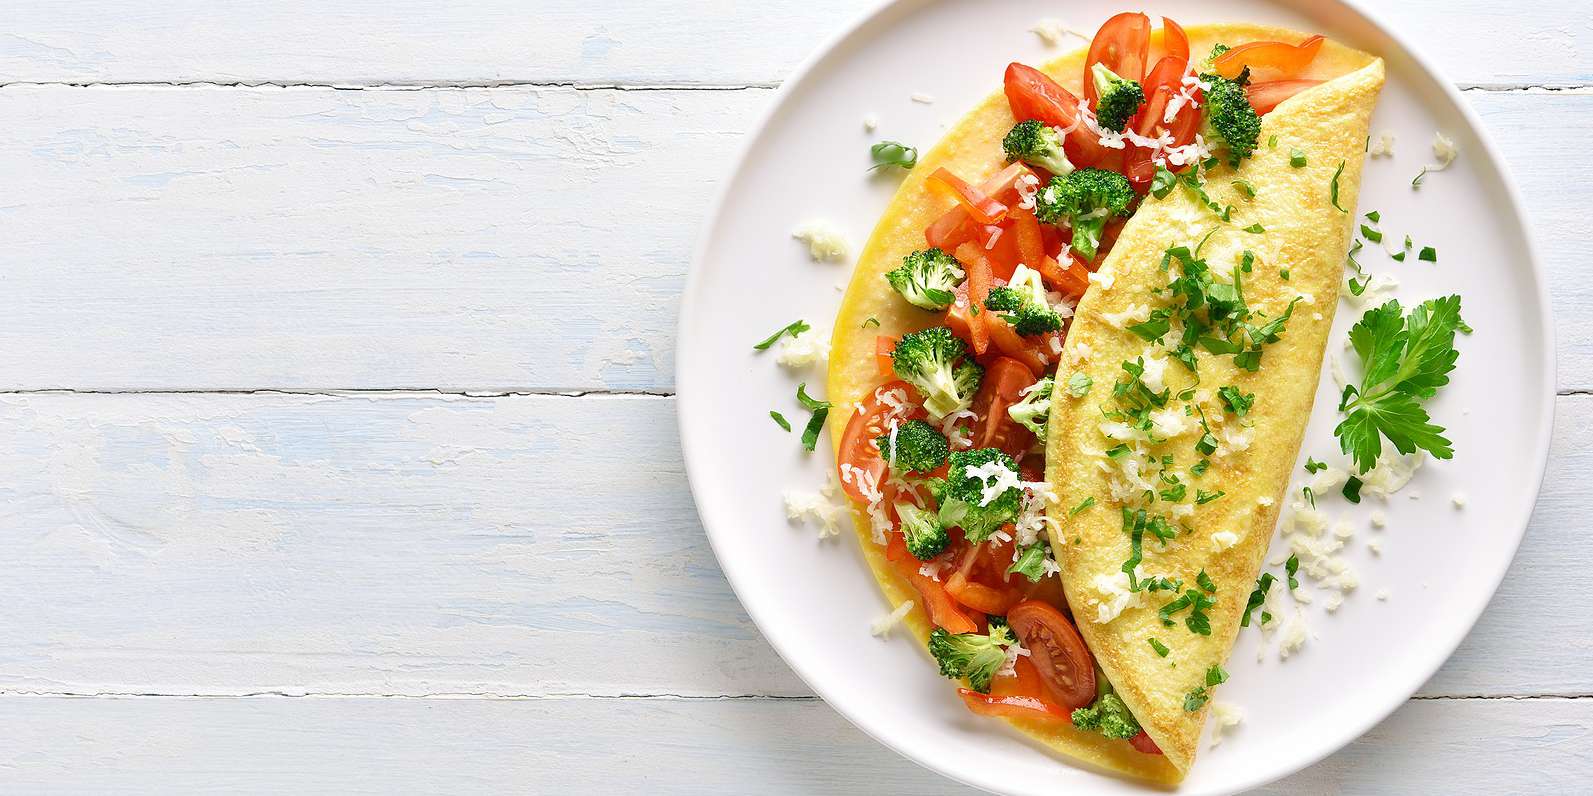 https://www.mealgarden.com/media/recipe/2021/01/bigstock-Stuffed-Omelette-With-Tomatoes-305879326.jpeg